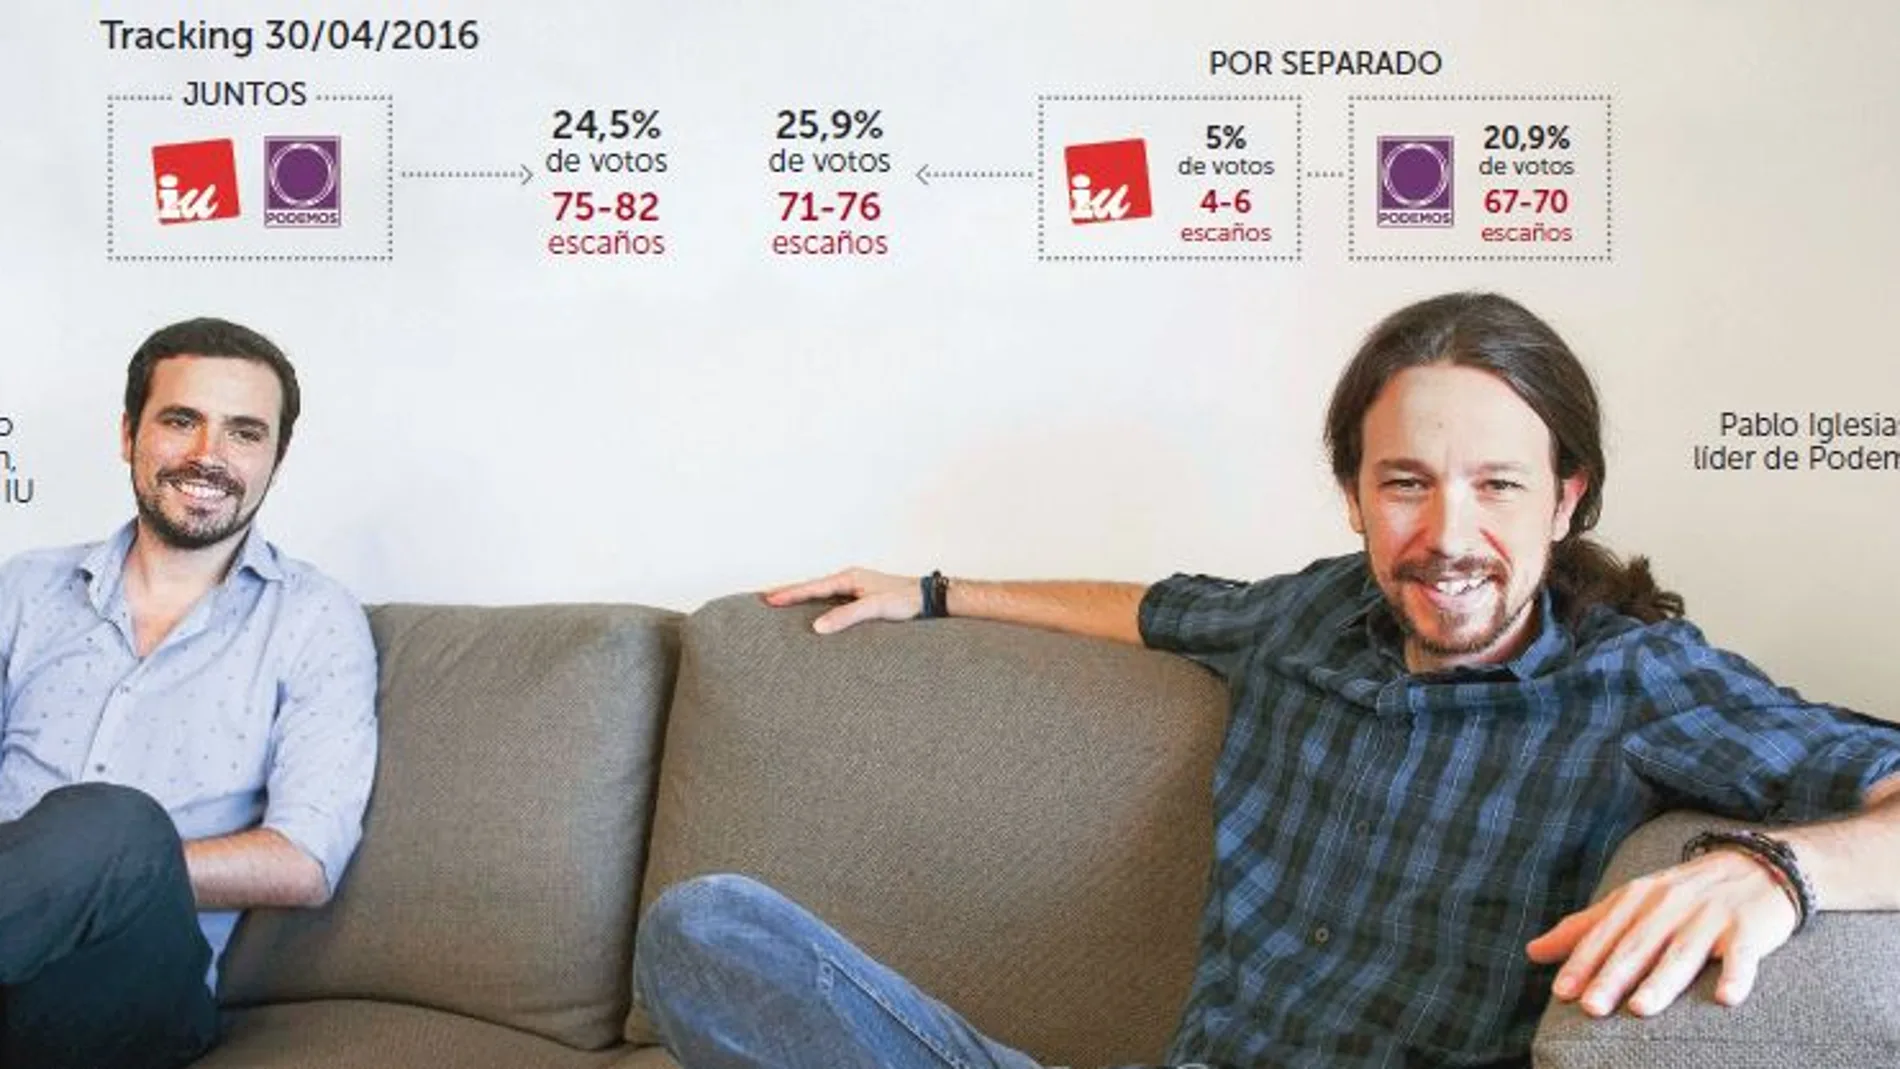 La alianza Podemos-IU, tendría más escaños pero menos porcentaje de voto